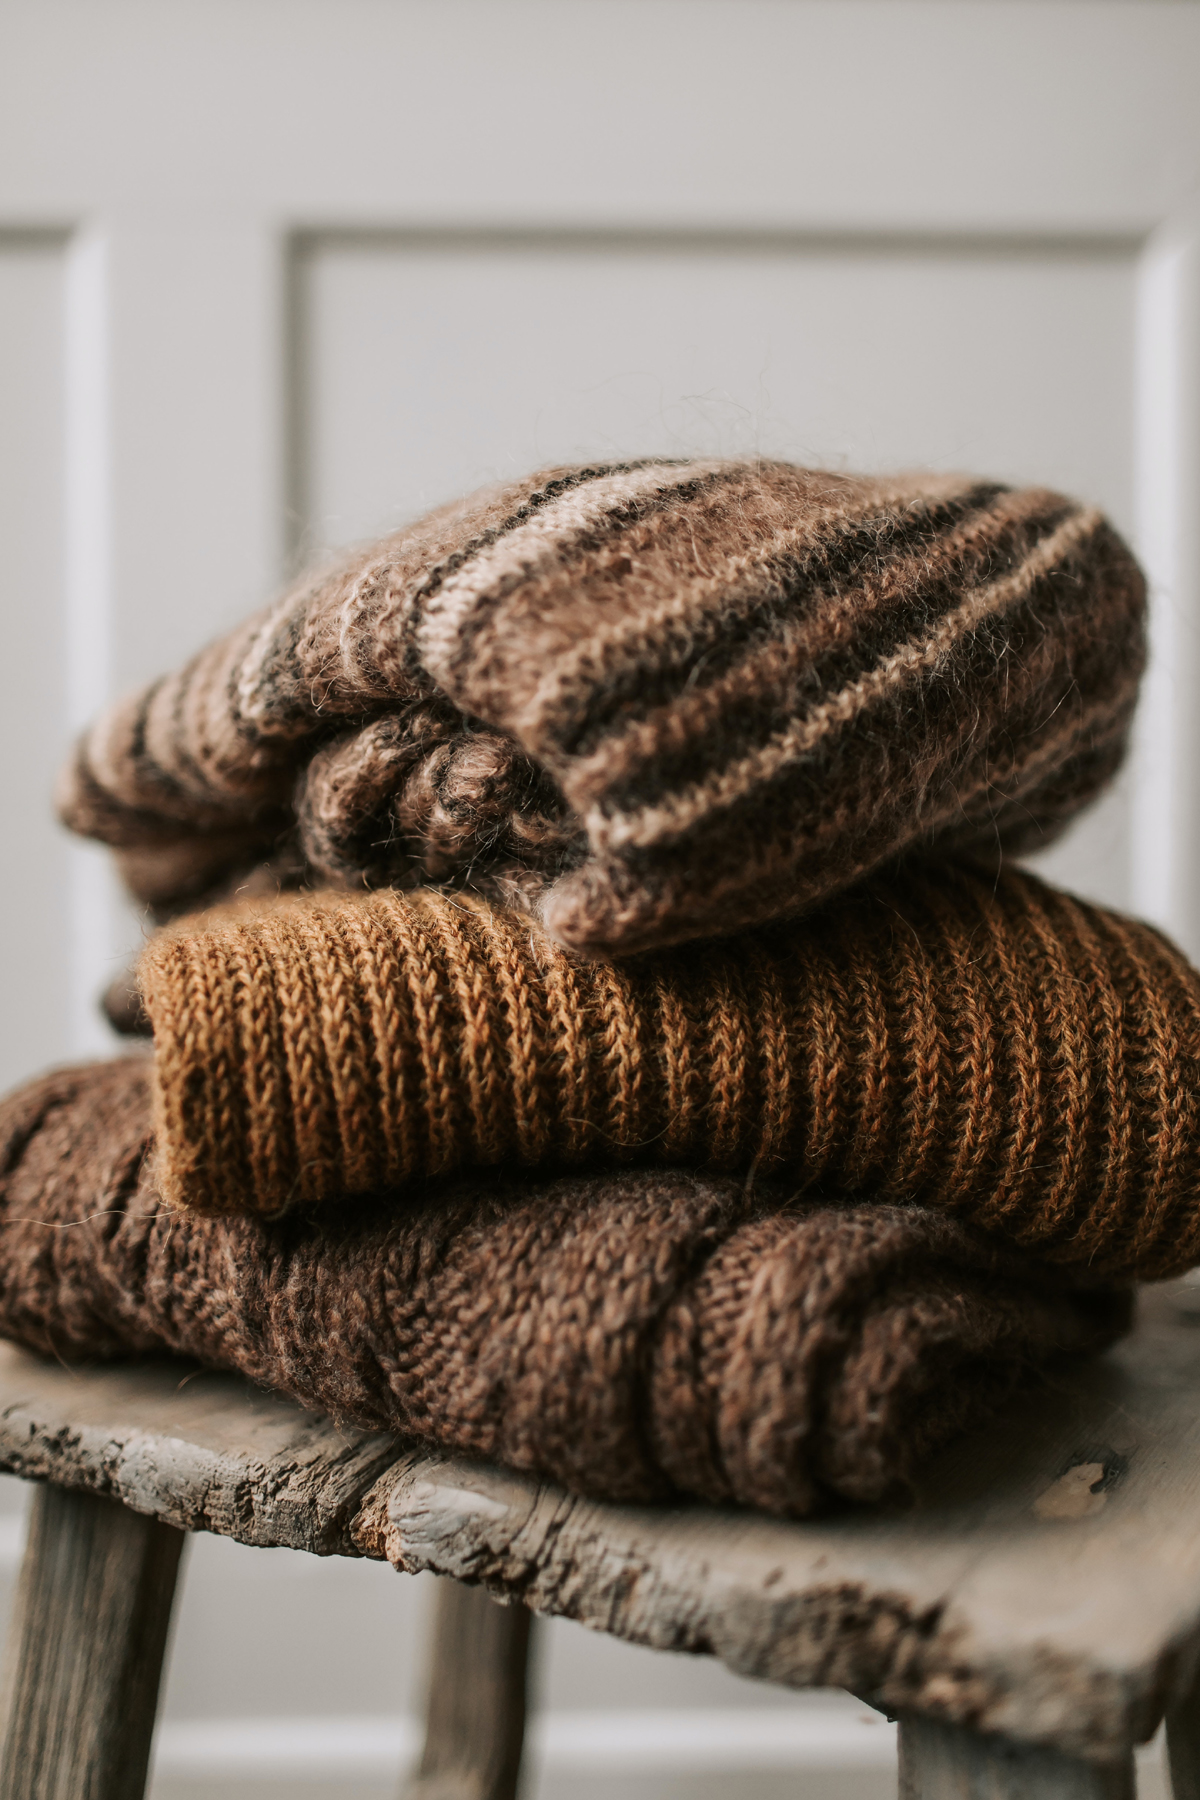 Un-Shrink a Wool Sweater